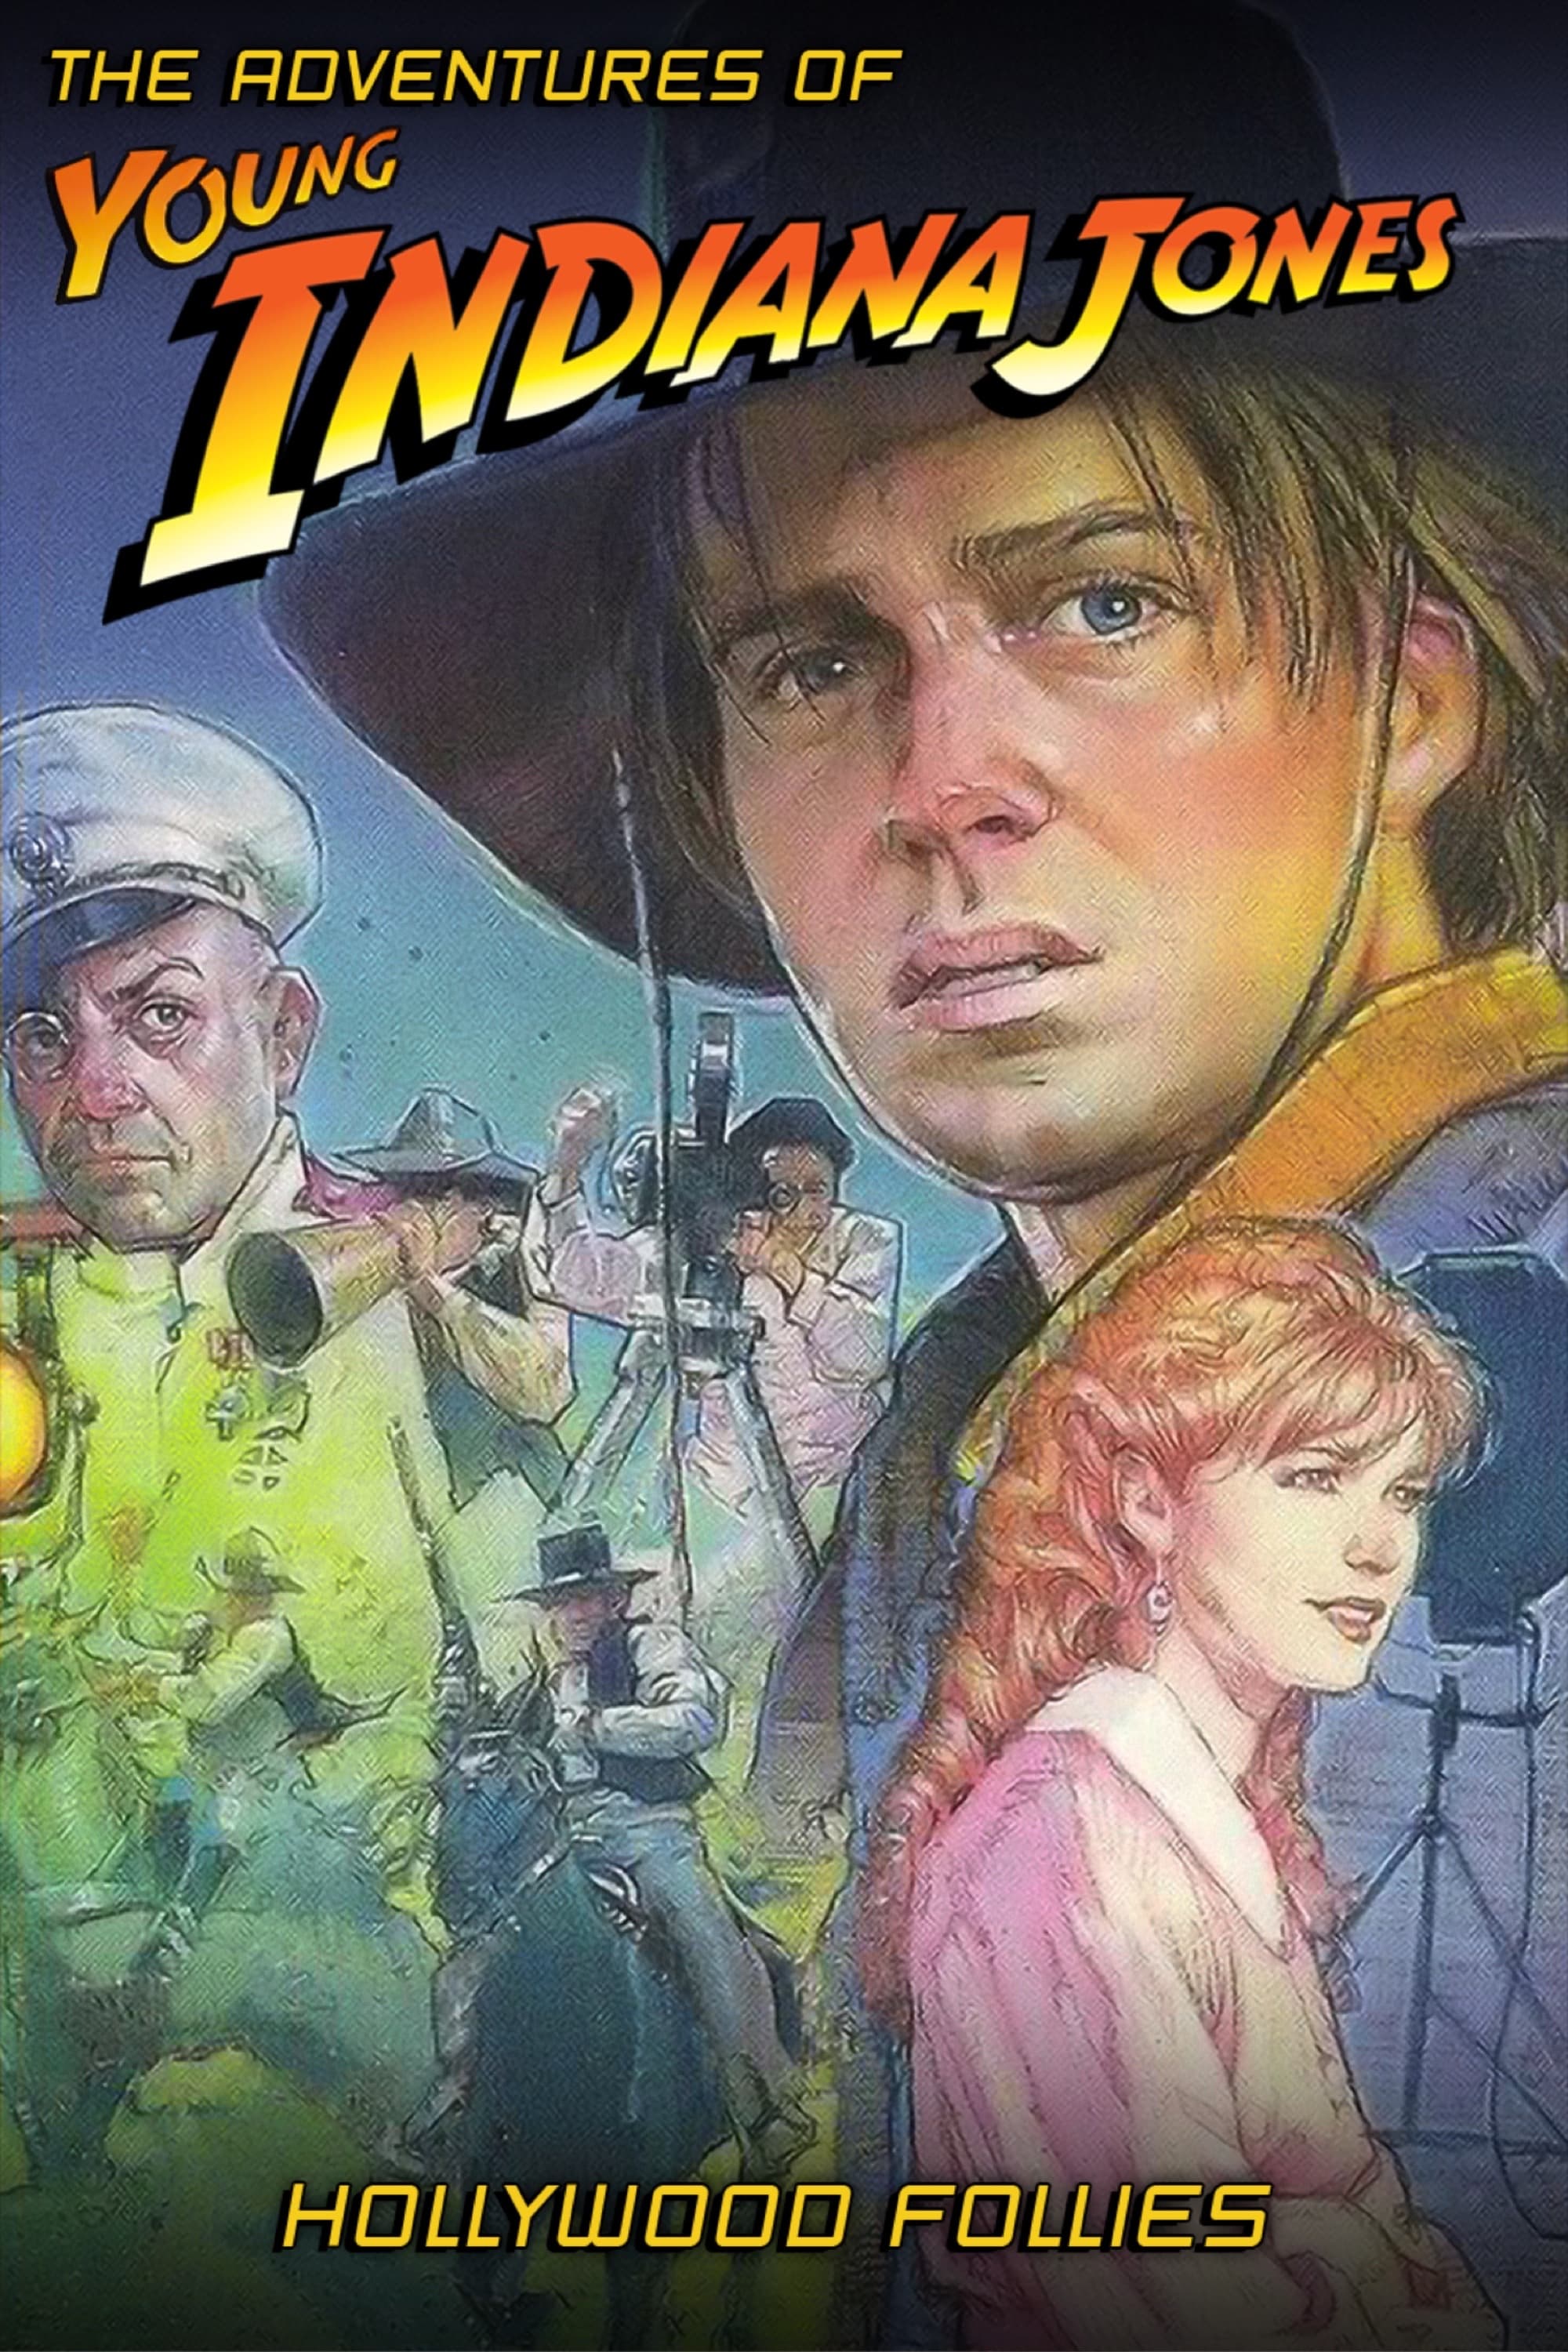 Les Aventures du Jeune Indiana Jones : Hollywood folies